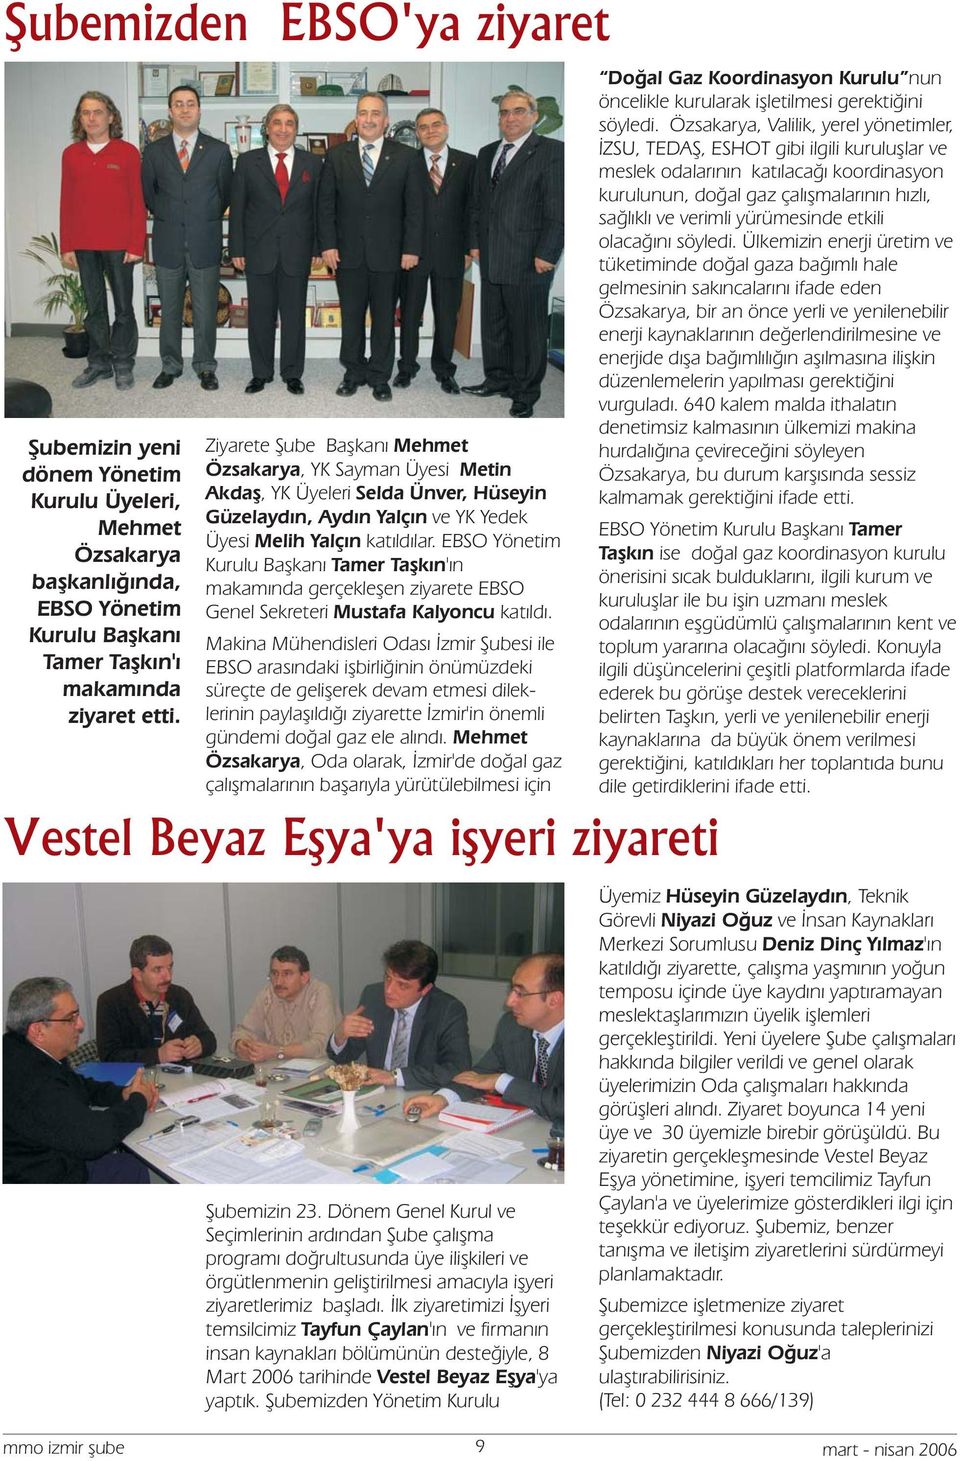 EBSO Yönetim Kurulu Başkanı Tamer Taşkın'ın makamında gerçekleşen ziyarete EBSO Genel Sekreteri Mustafa Kalyoncu katıldı.